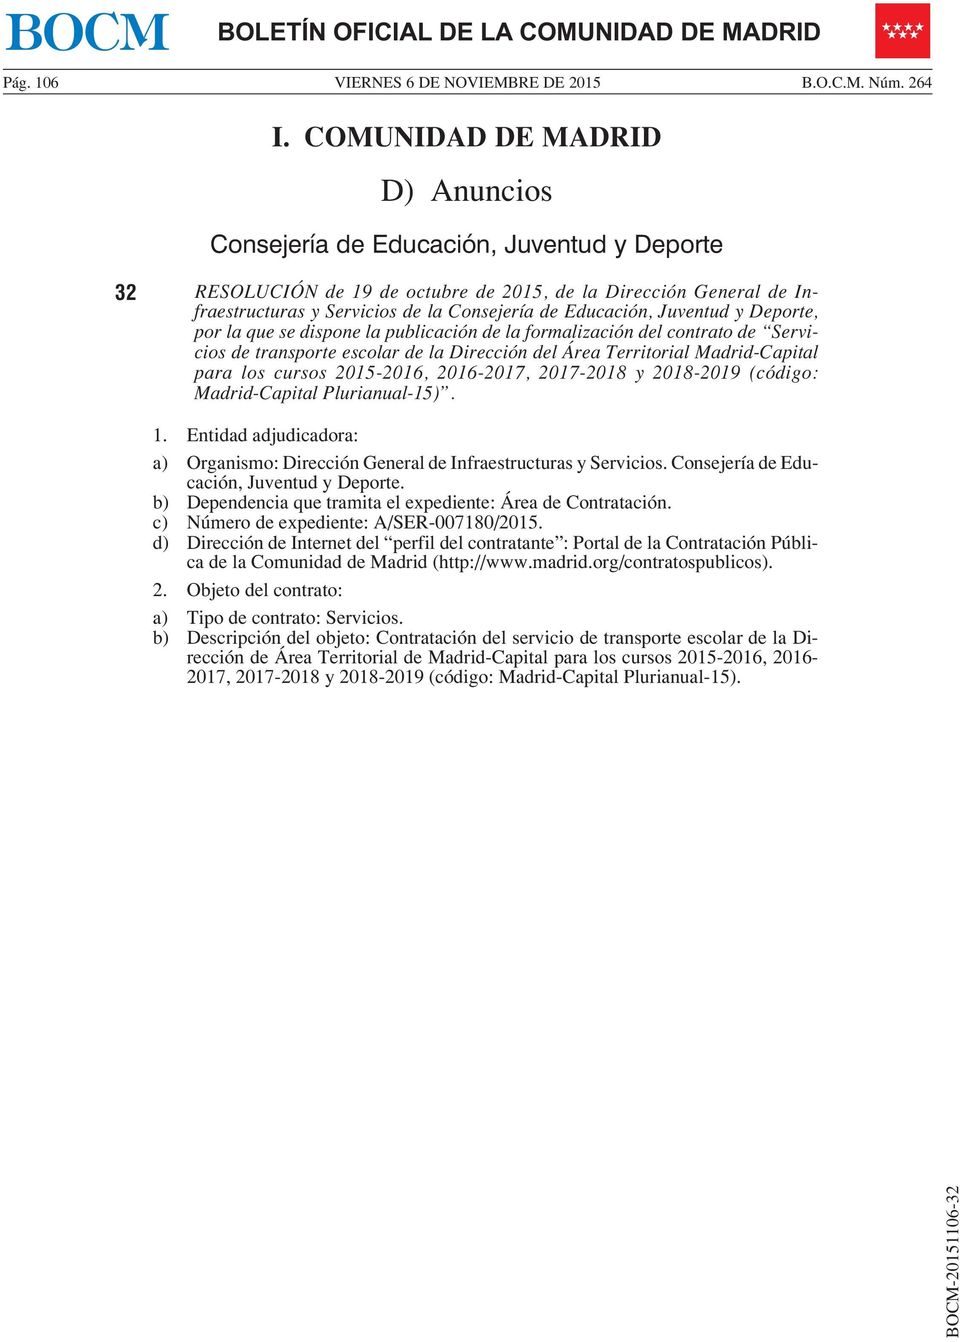 Educación, Juventud y Deporte, por la que se dispone la publicación de la formalización del contrato de Servicios de transporte escolar de la Dirección del Área Territorial Madrid-Capital para los